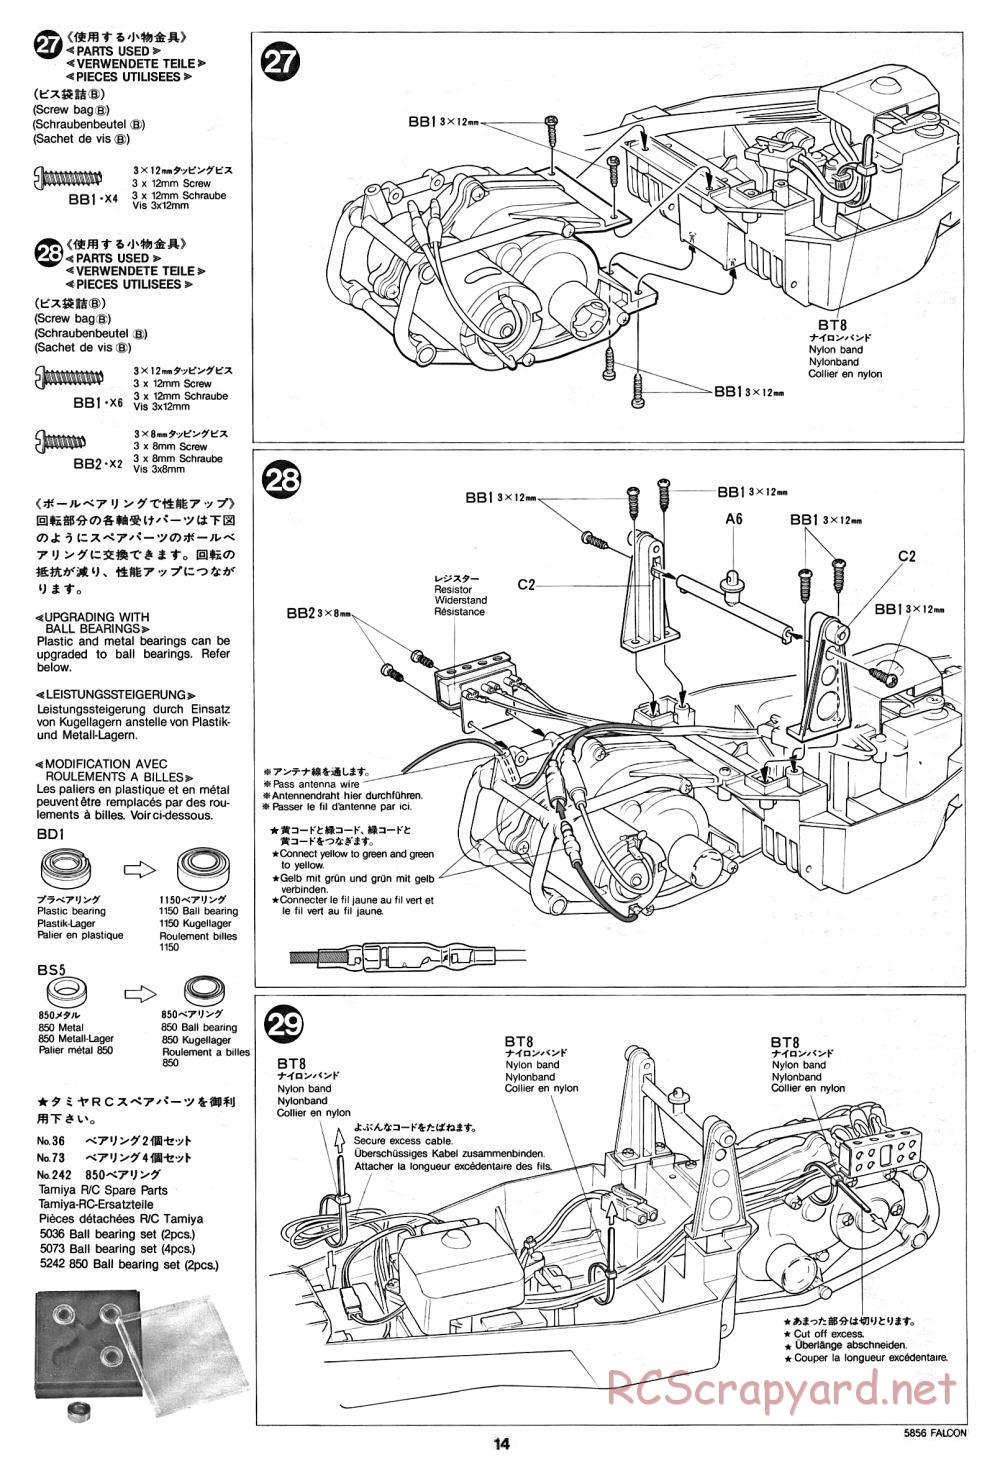 Tamiya - The Falcon - 58056 - Manual - Page 14